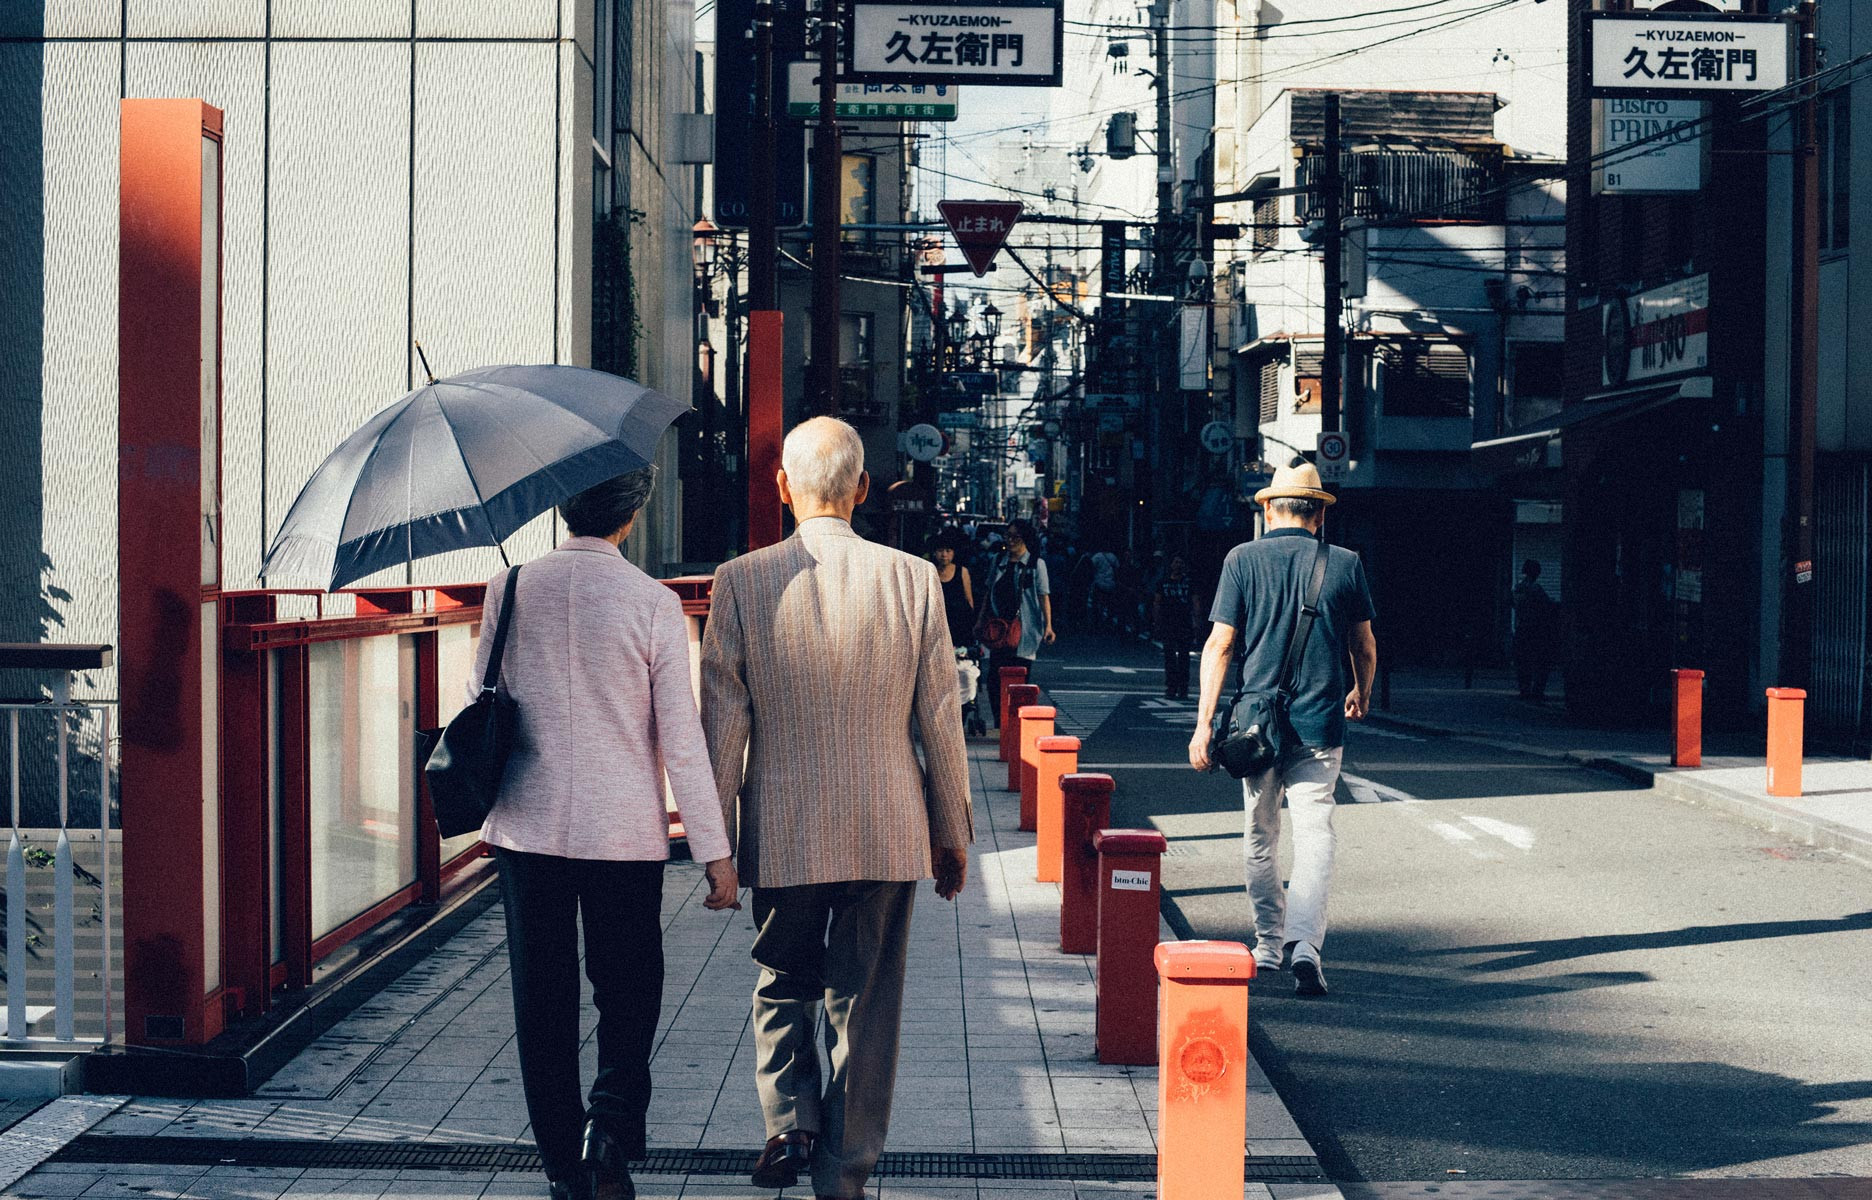 Bons conseils 10 choses à ne pas faire au Japon - The Good Life